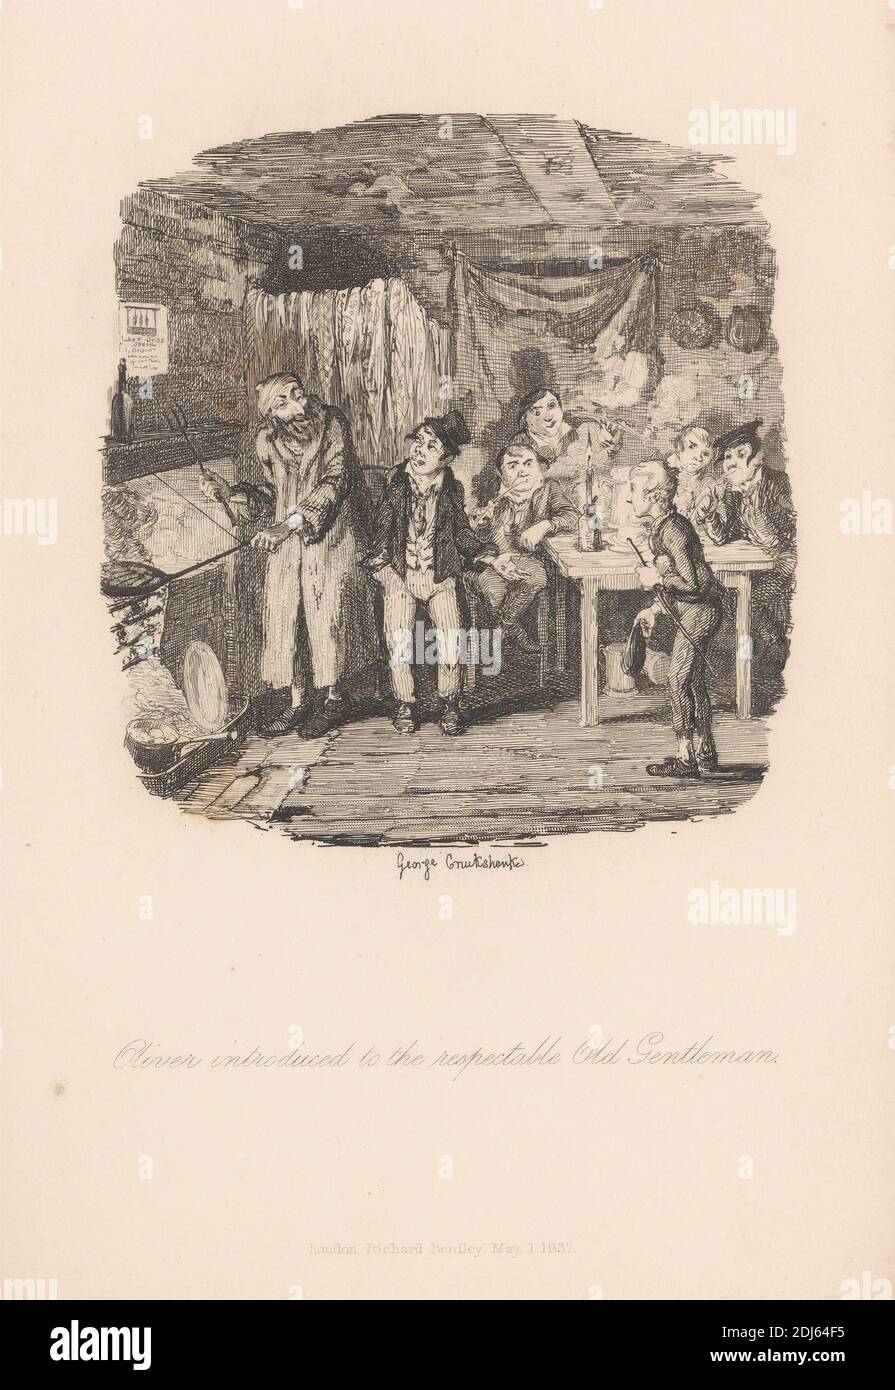 Oliver wird dem respektablen alten Gentleman vorgestellt, Druck von George Cruikshank, 1792–1878, British, 1837, Strichgravur auf mittelschwerem, leicht strukturiertem, cremefarbenen Wove-Papier Stockfoto